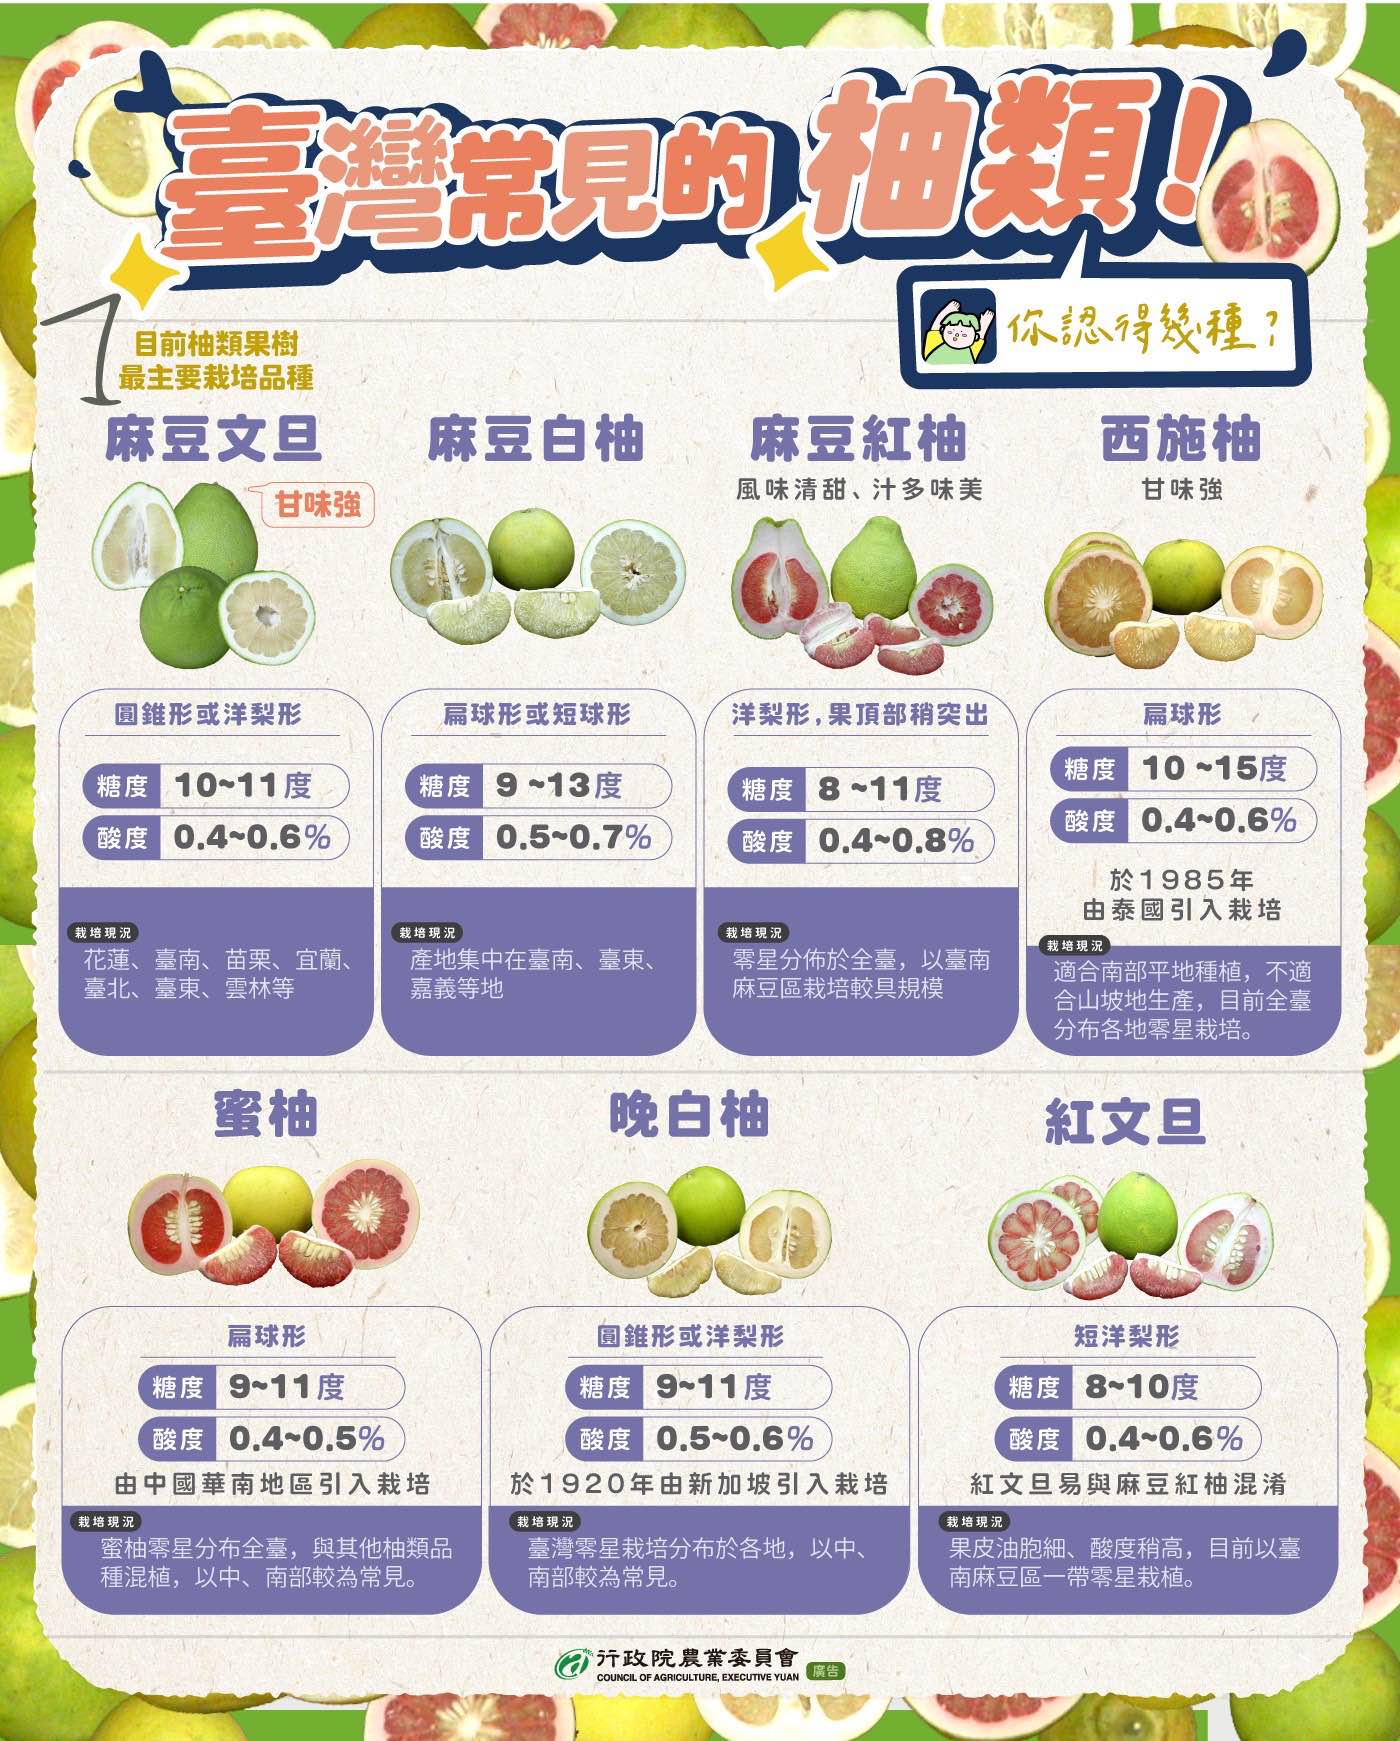 臺灣常見的柚類品種